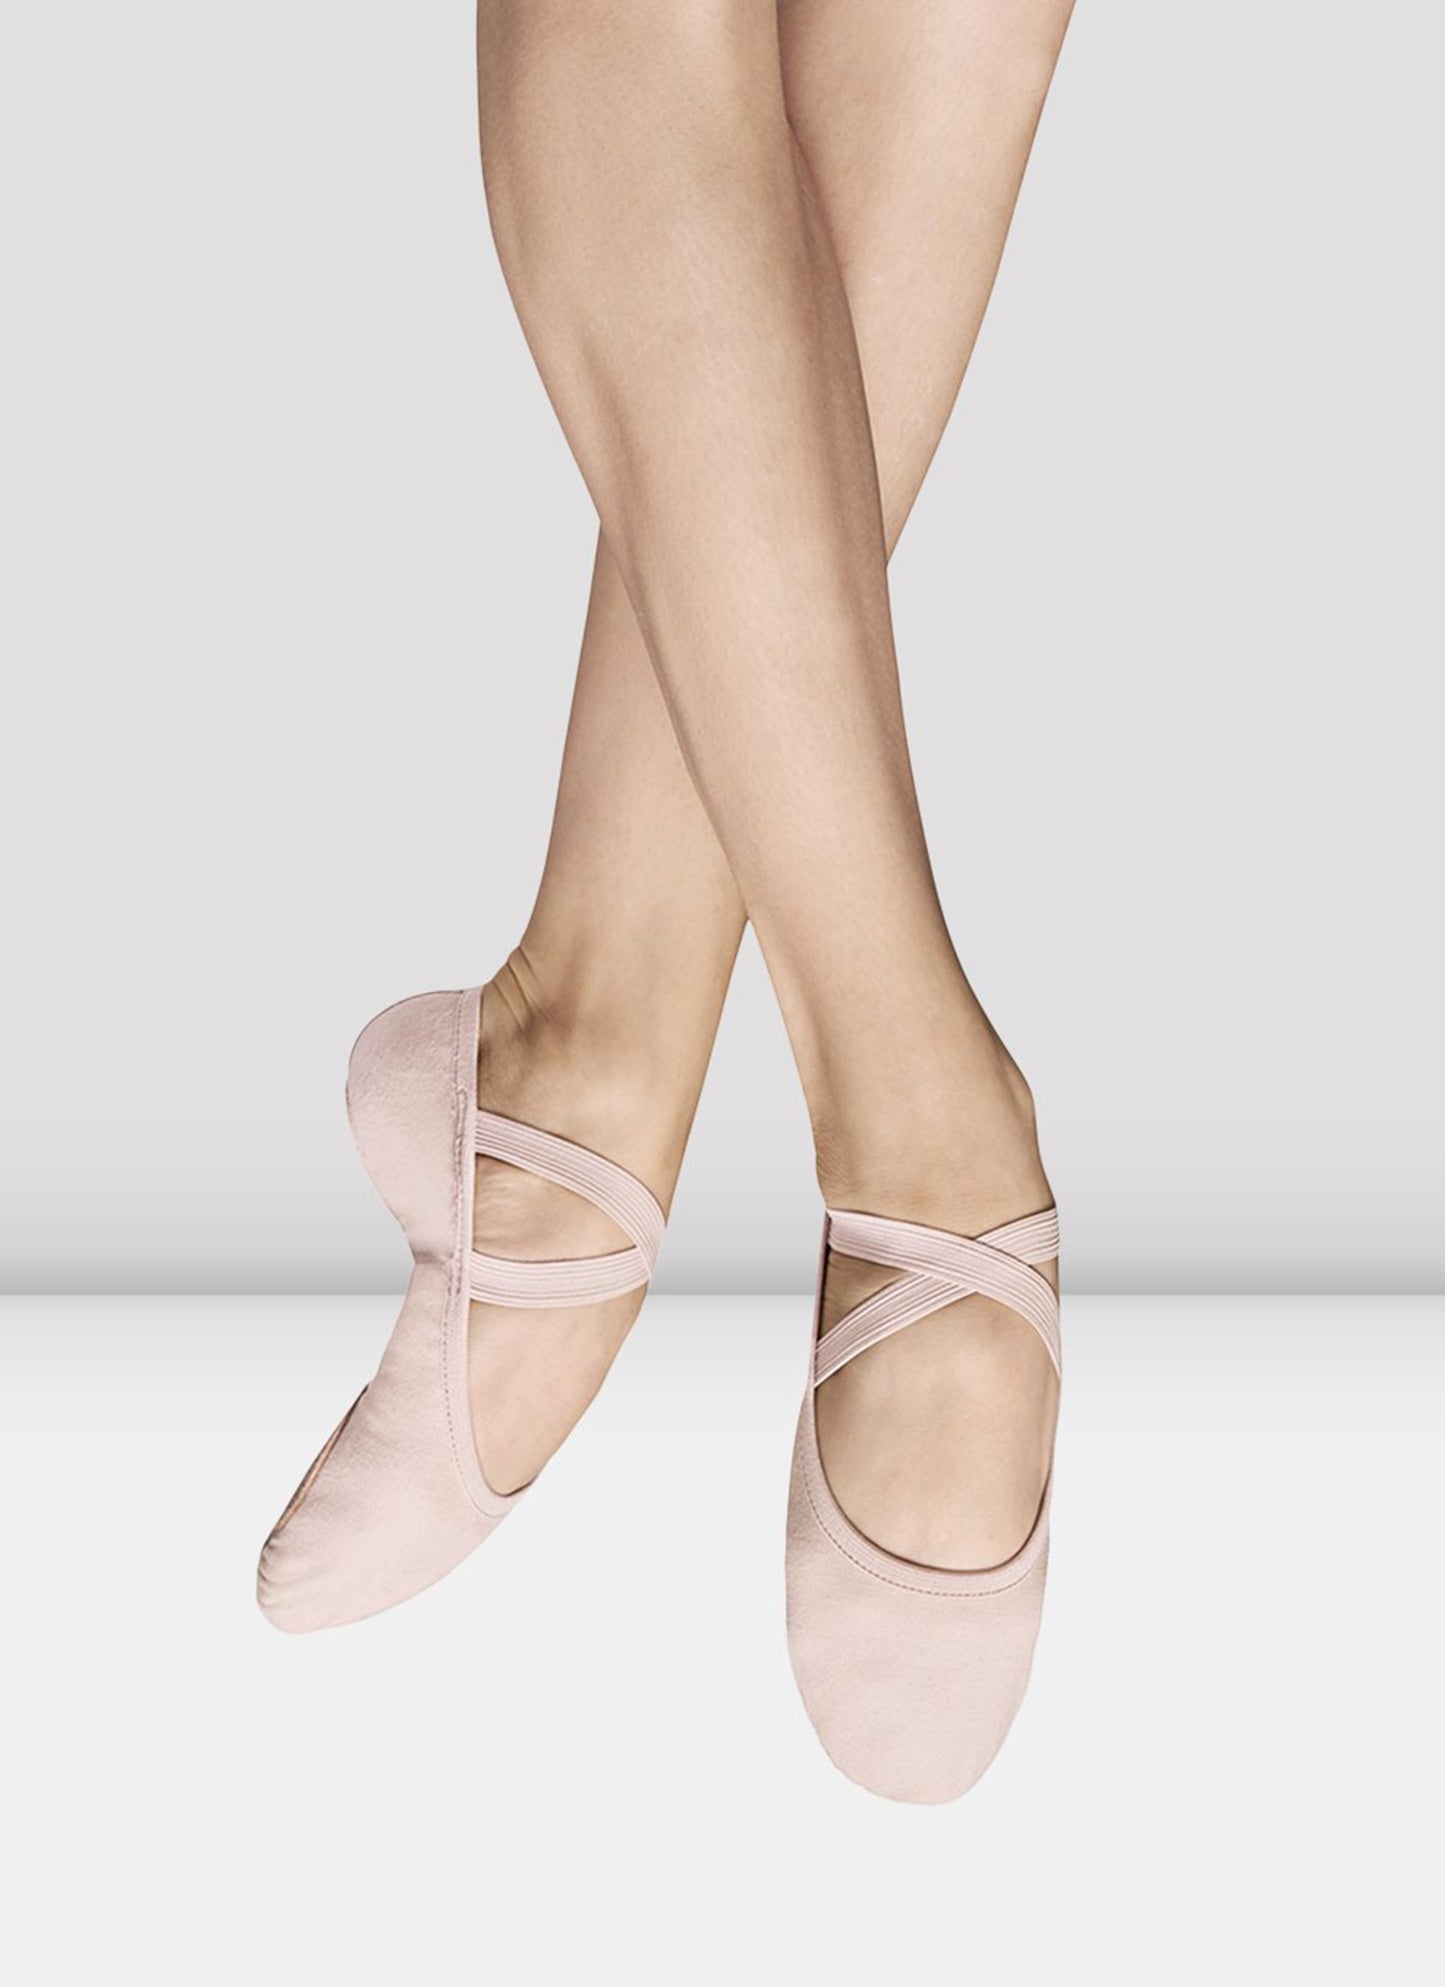 Performa Ballet Shoe